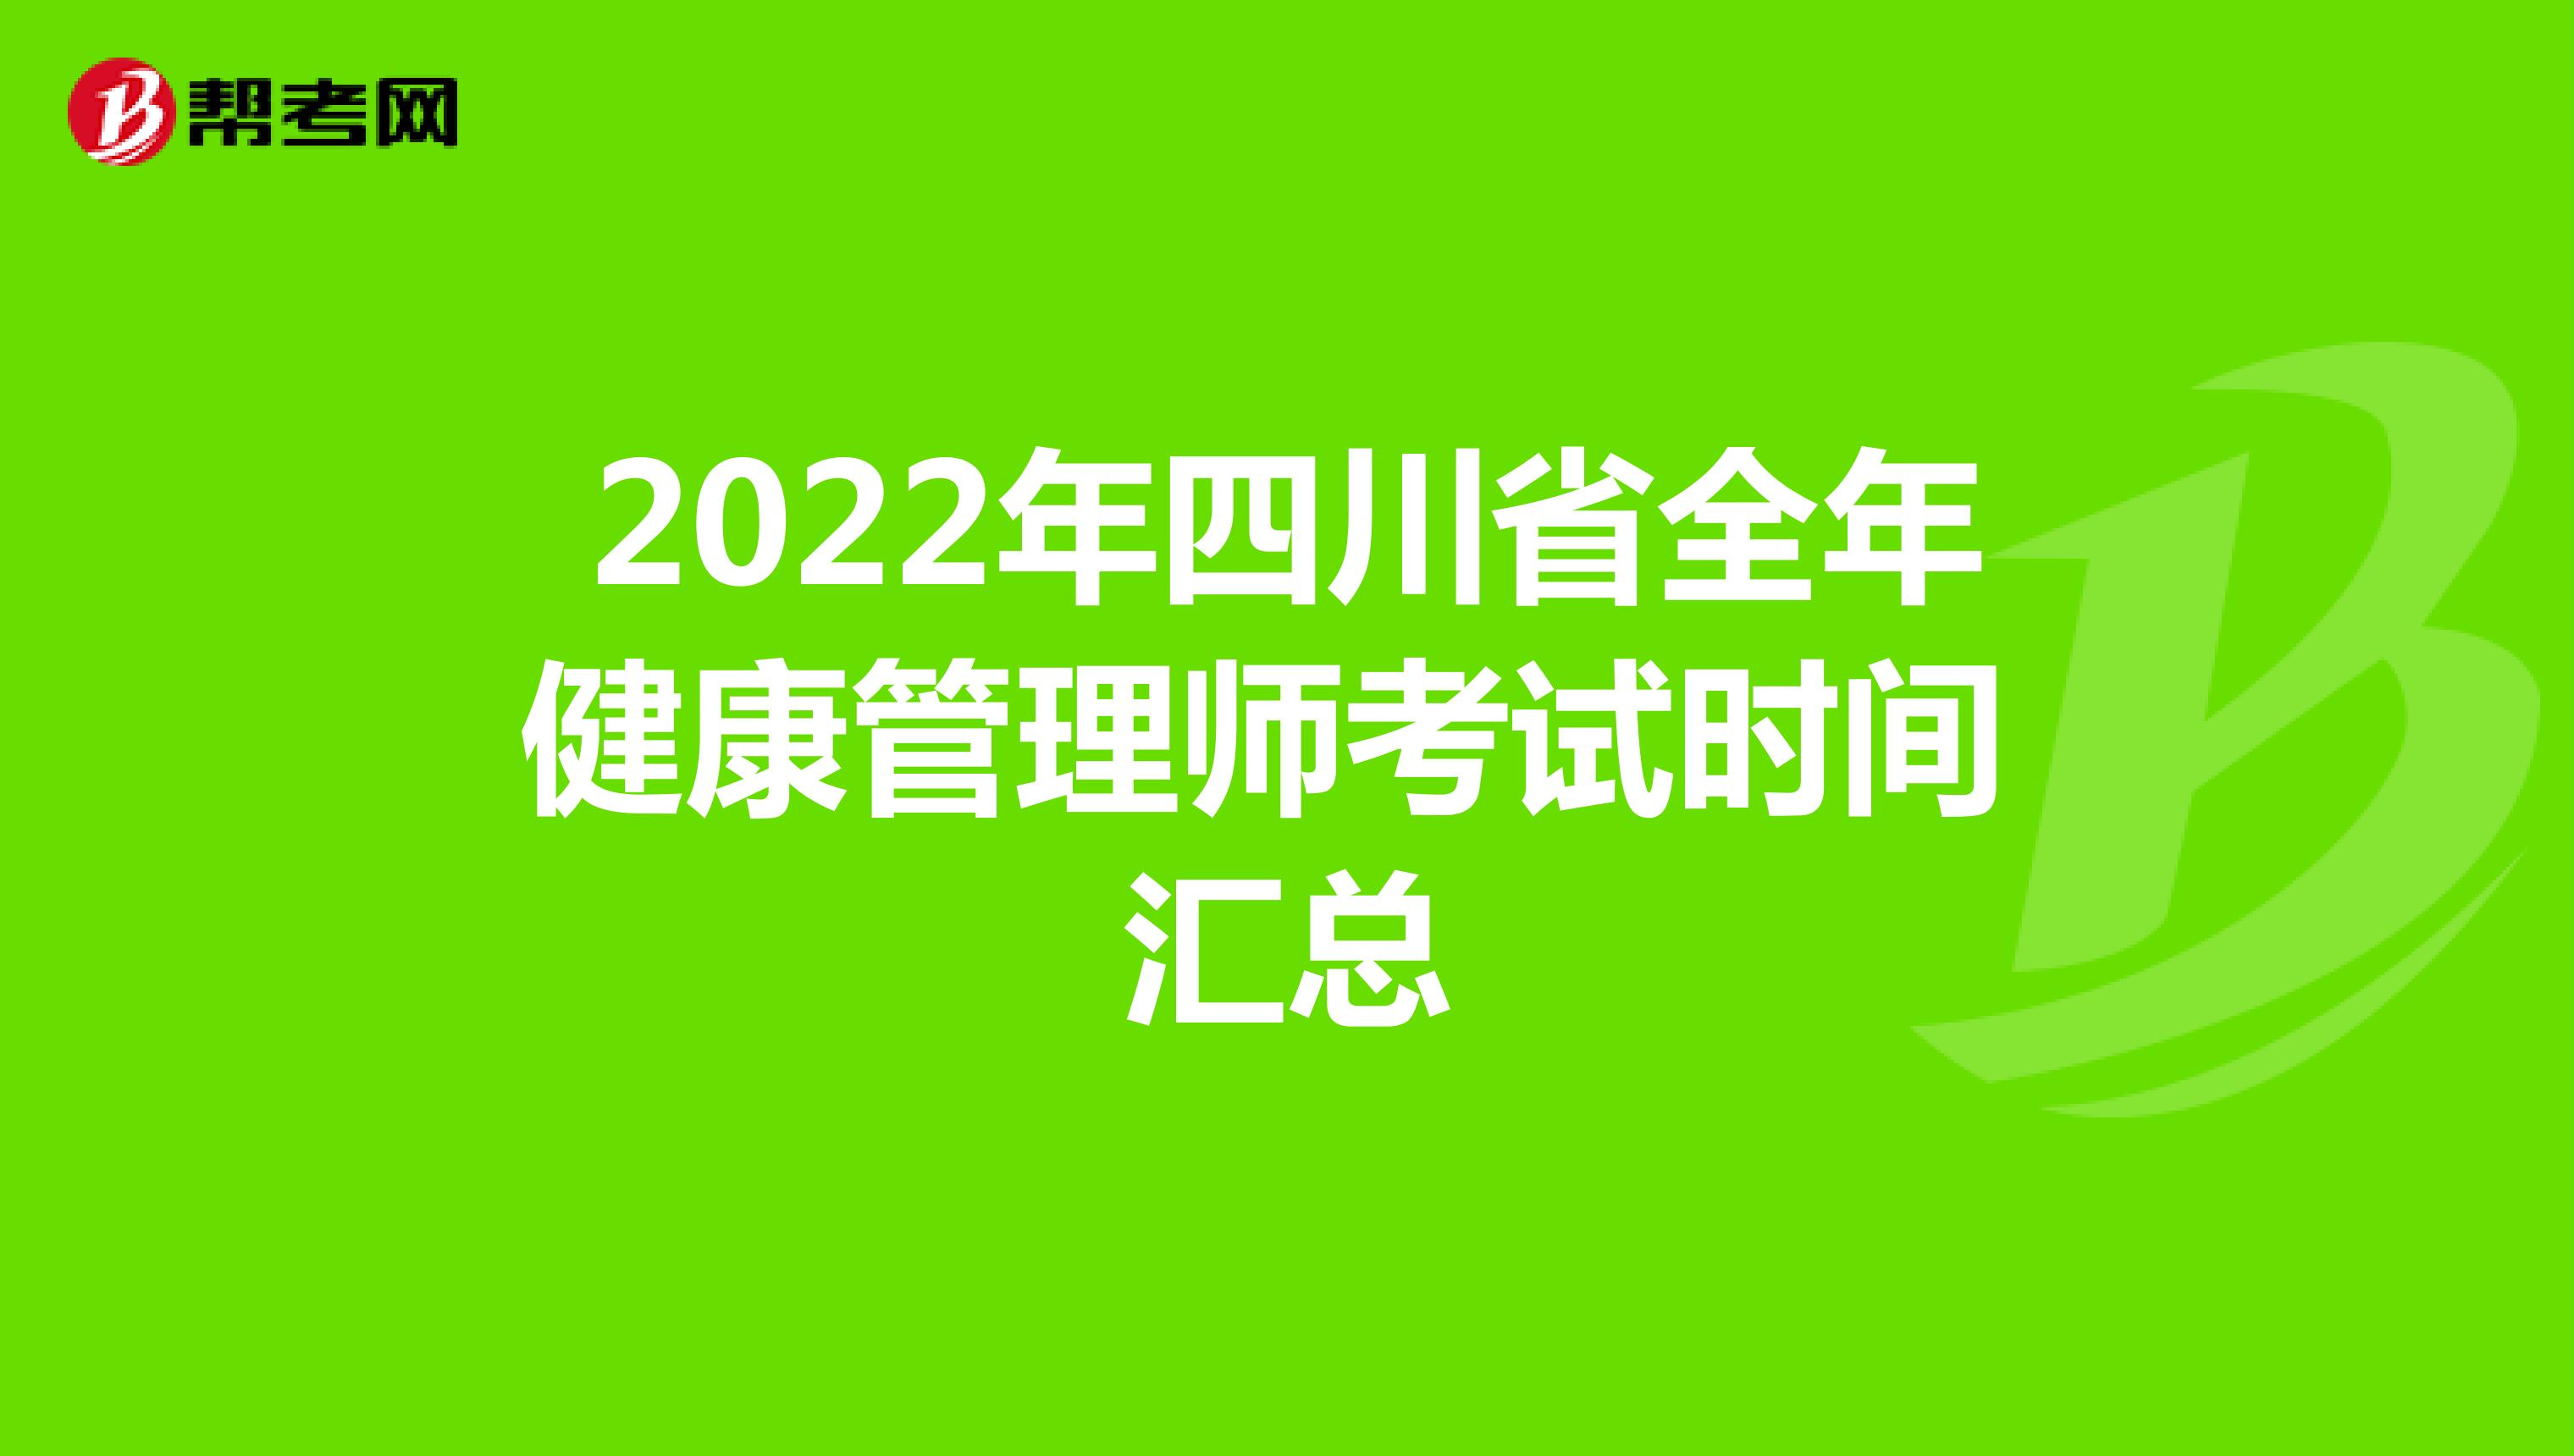 2022年四川省全年健康管理师考试时间汇总